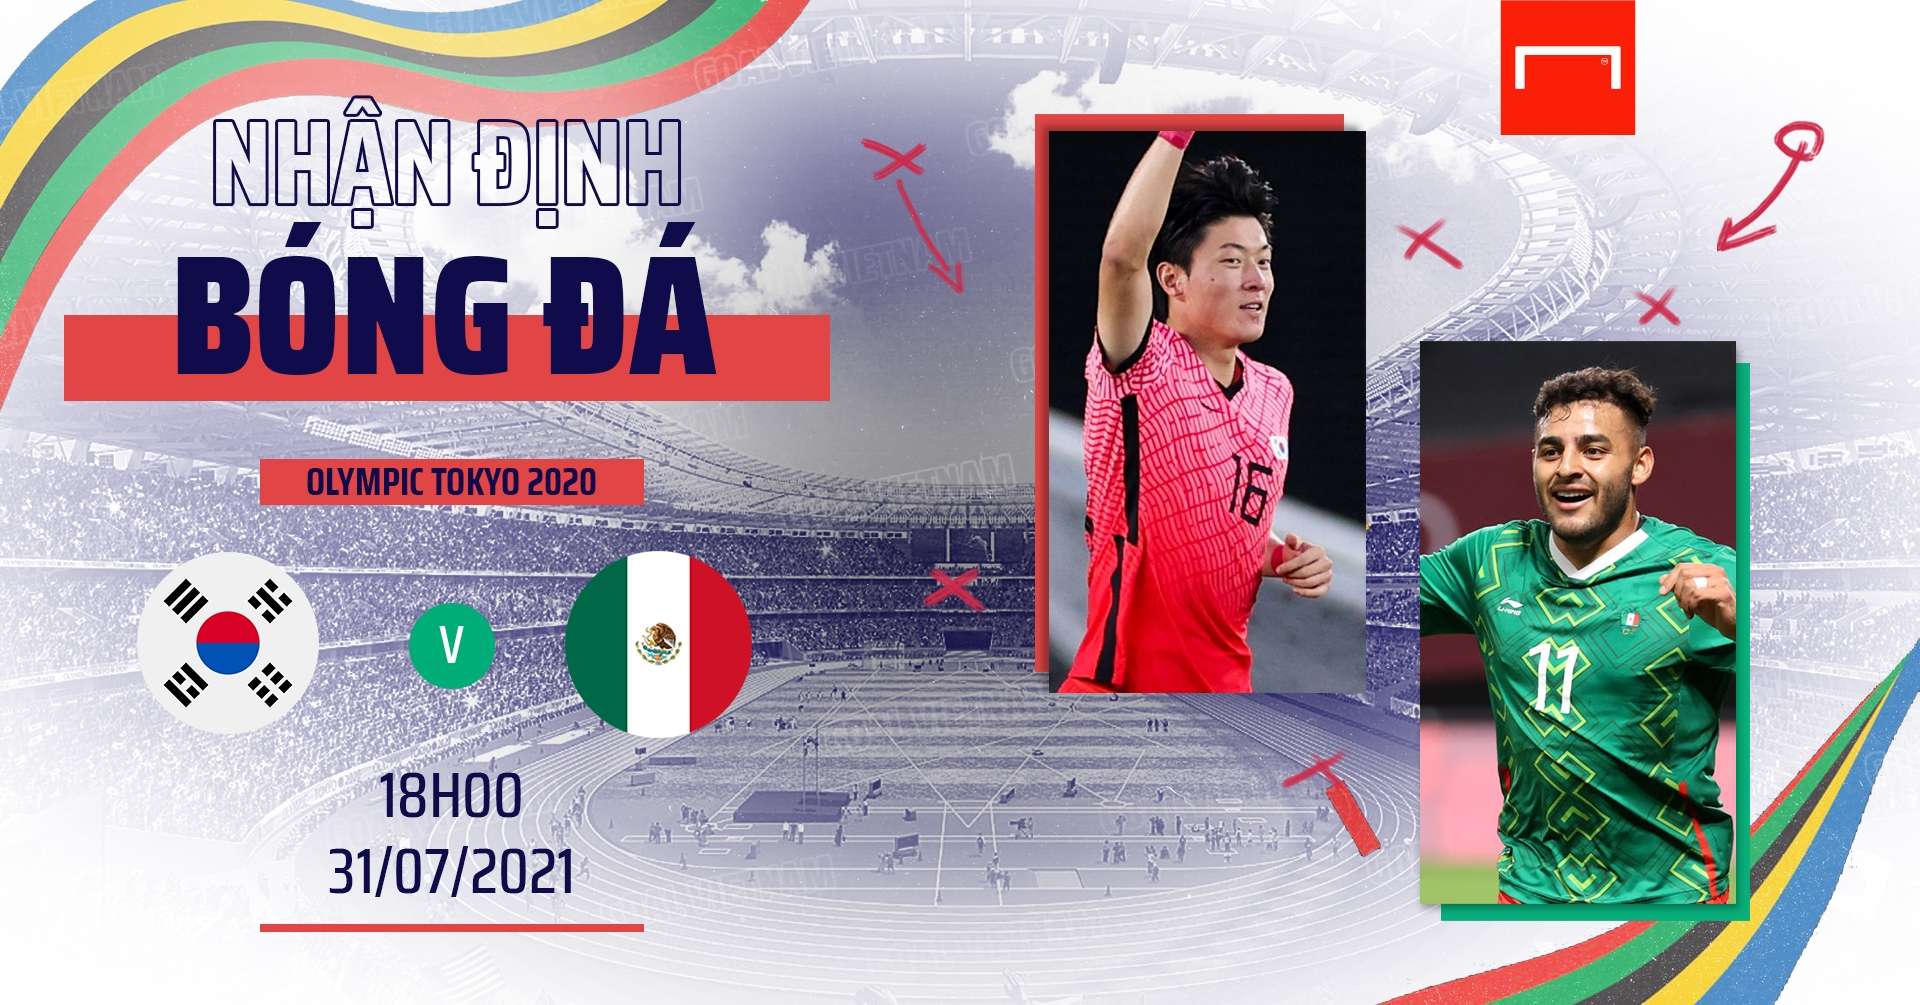 Preview Korea U23 vs Mexico U23 Olympic 2020 GFX